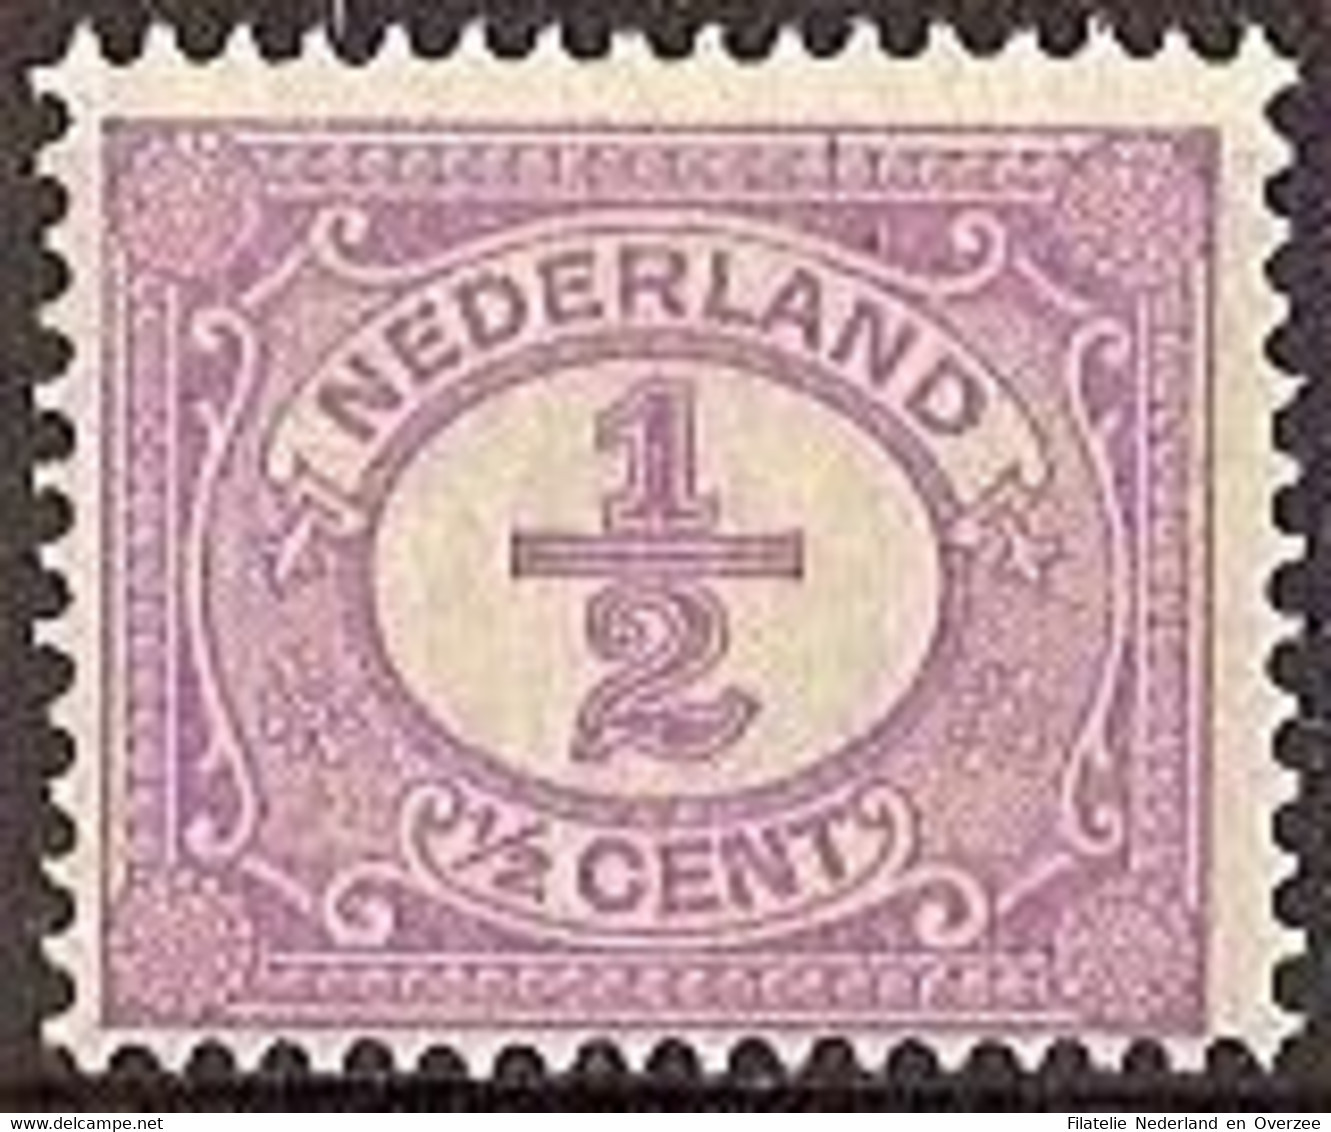 Nederland 1899 NVPH Nr 50 Postfris/MNH Cijfer - Unused Stamps